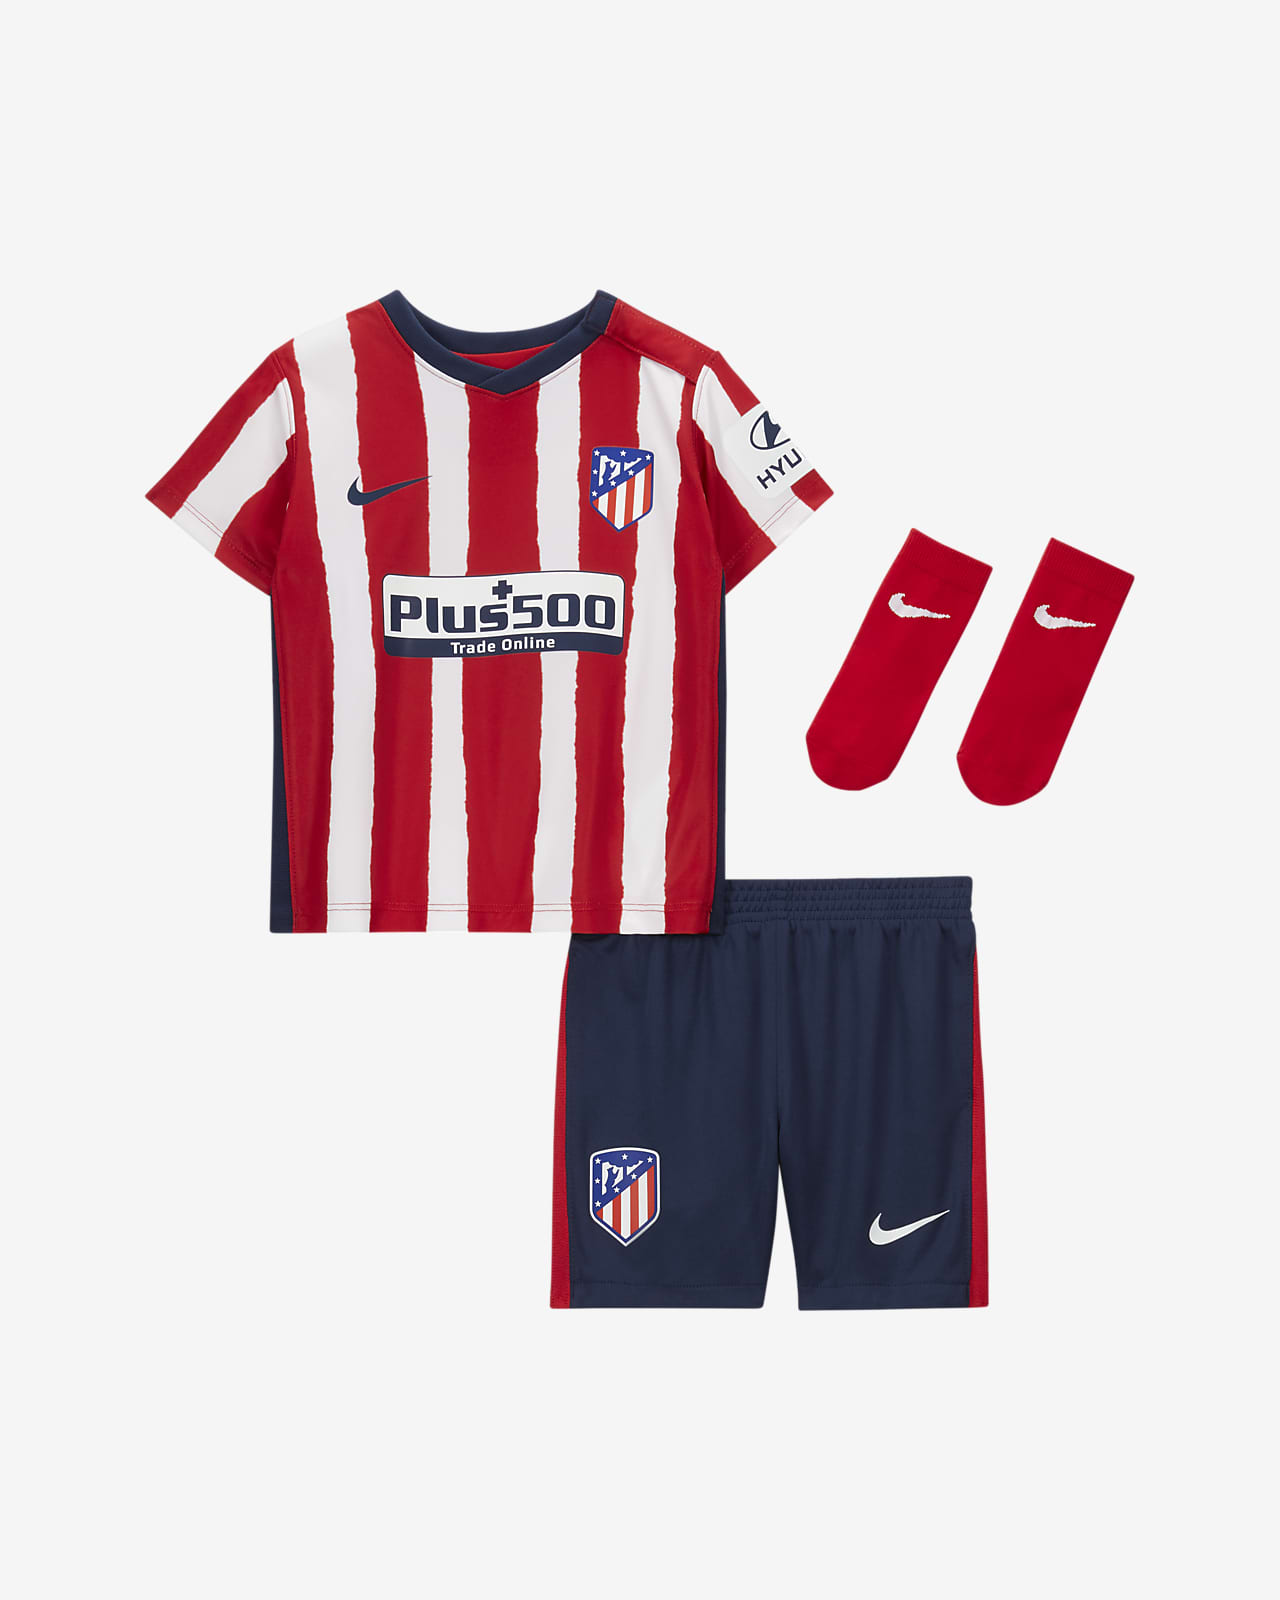 Atletico Madrid Kit 2020/21 - Atlético Madrid 2020-21 Nike ...